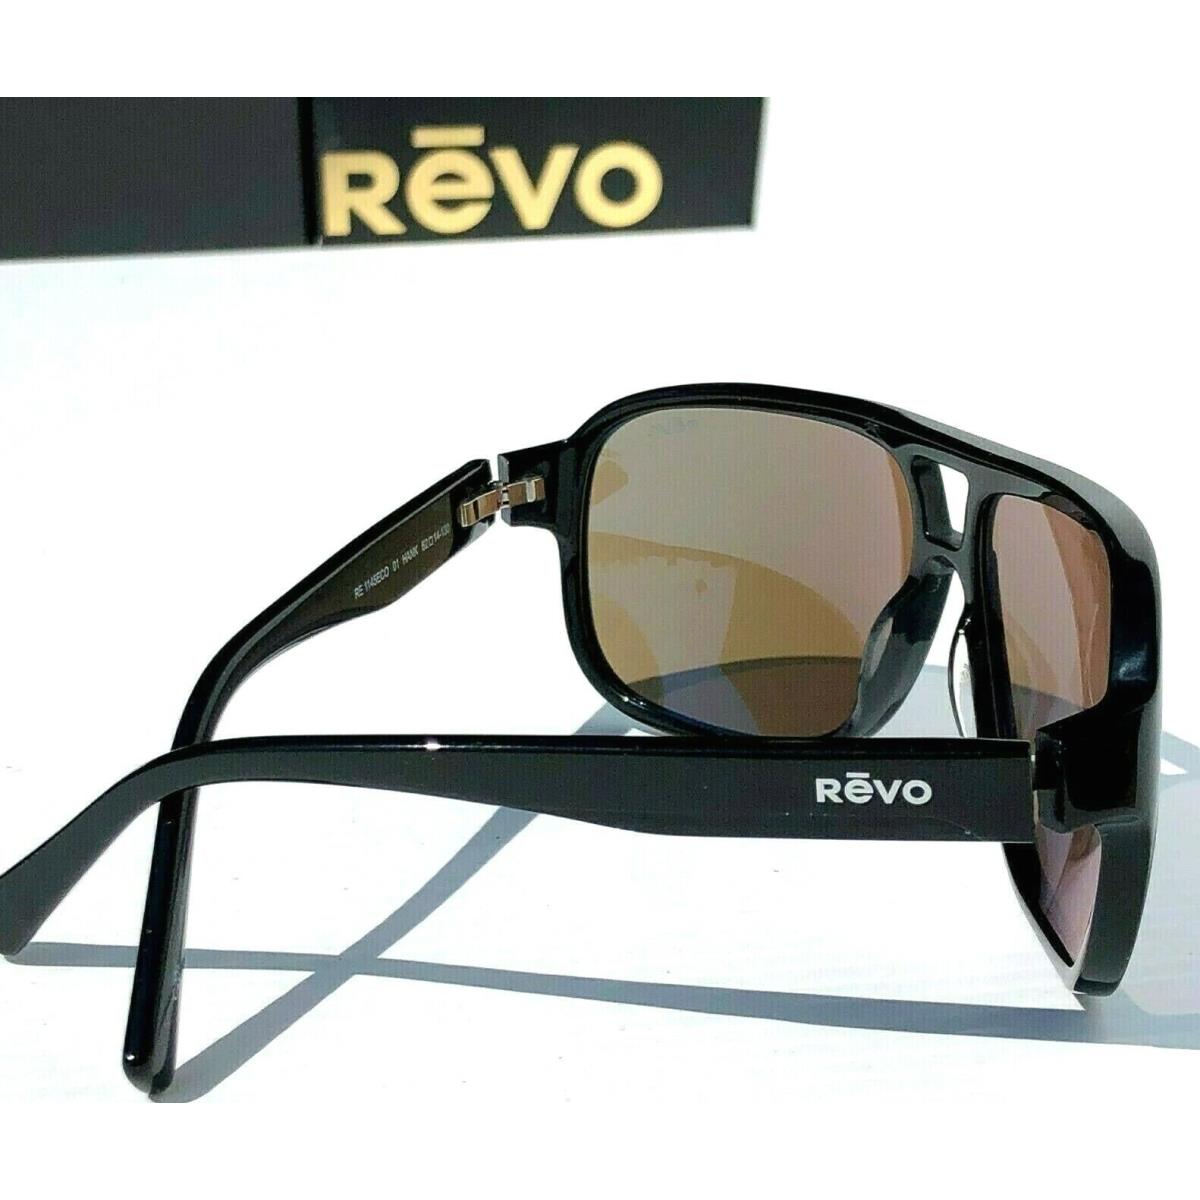 Revo sunglasses Hank - Black Frame, Blue Lens